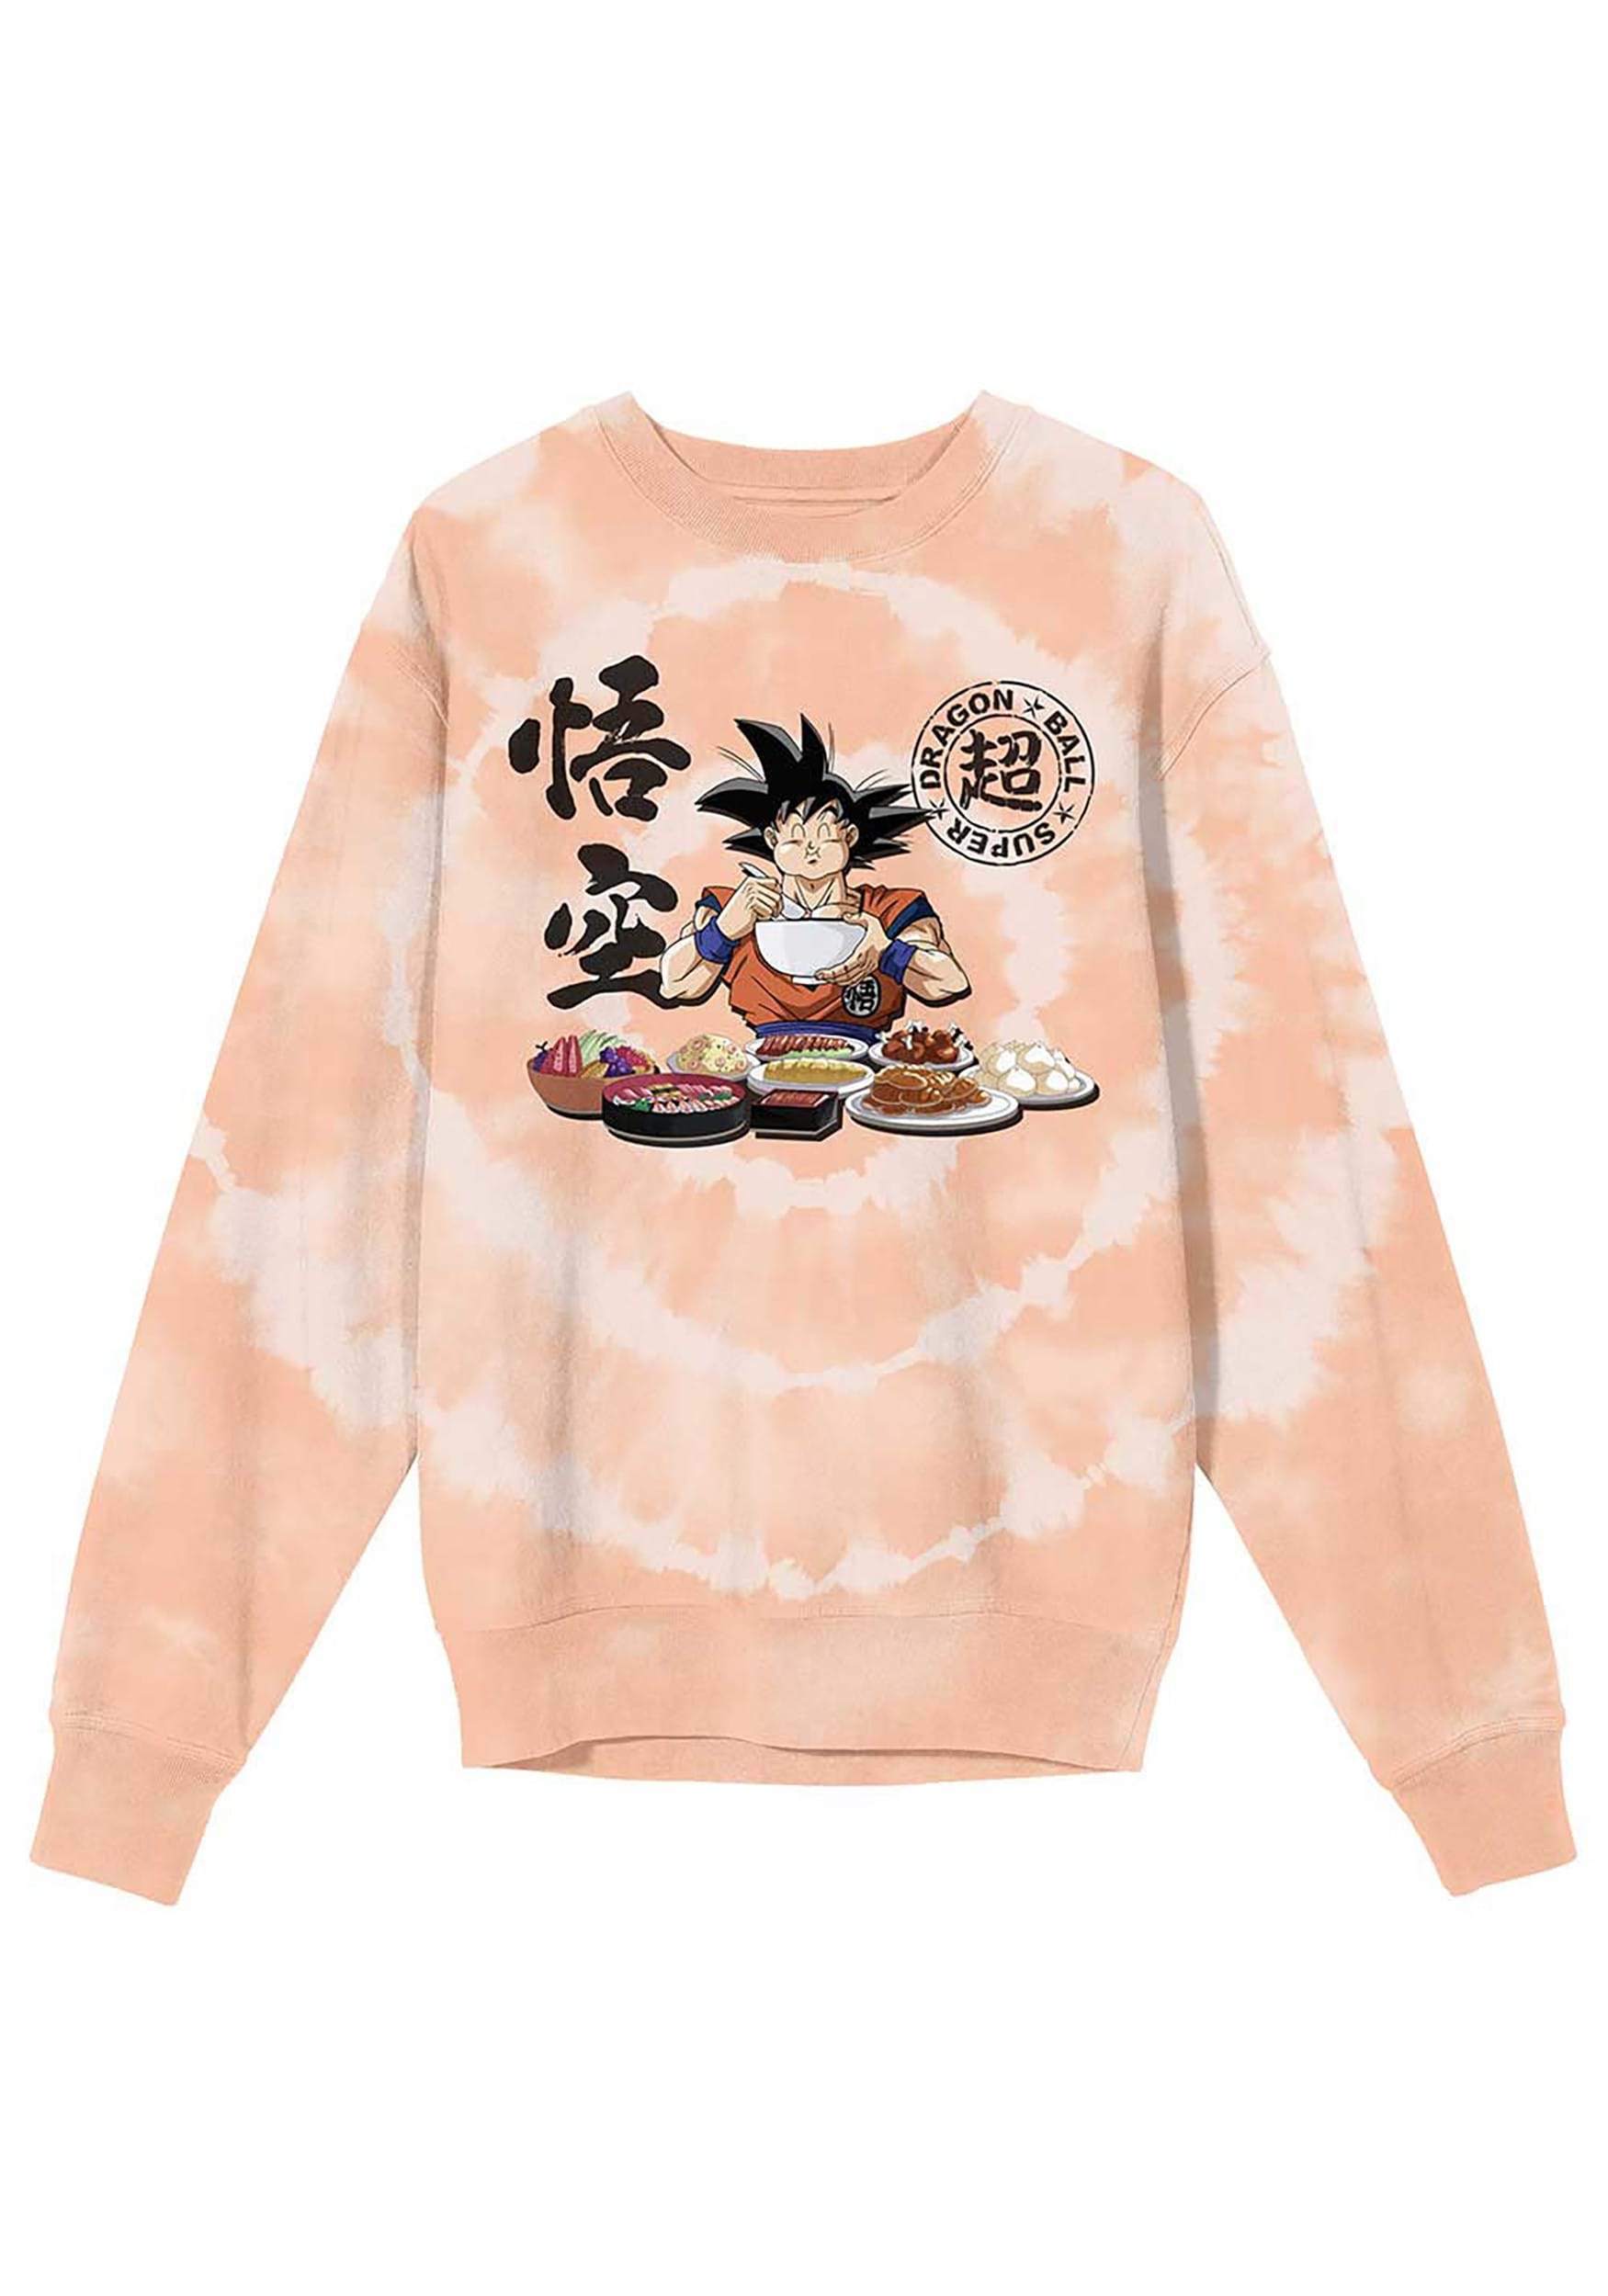 Dragon Ball Z Goku Feast Unisex Adult Sweatshirt